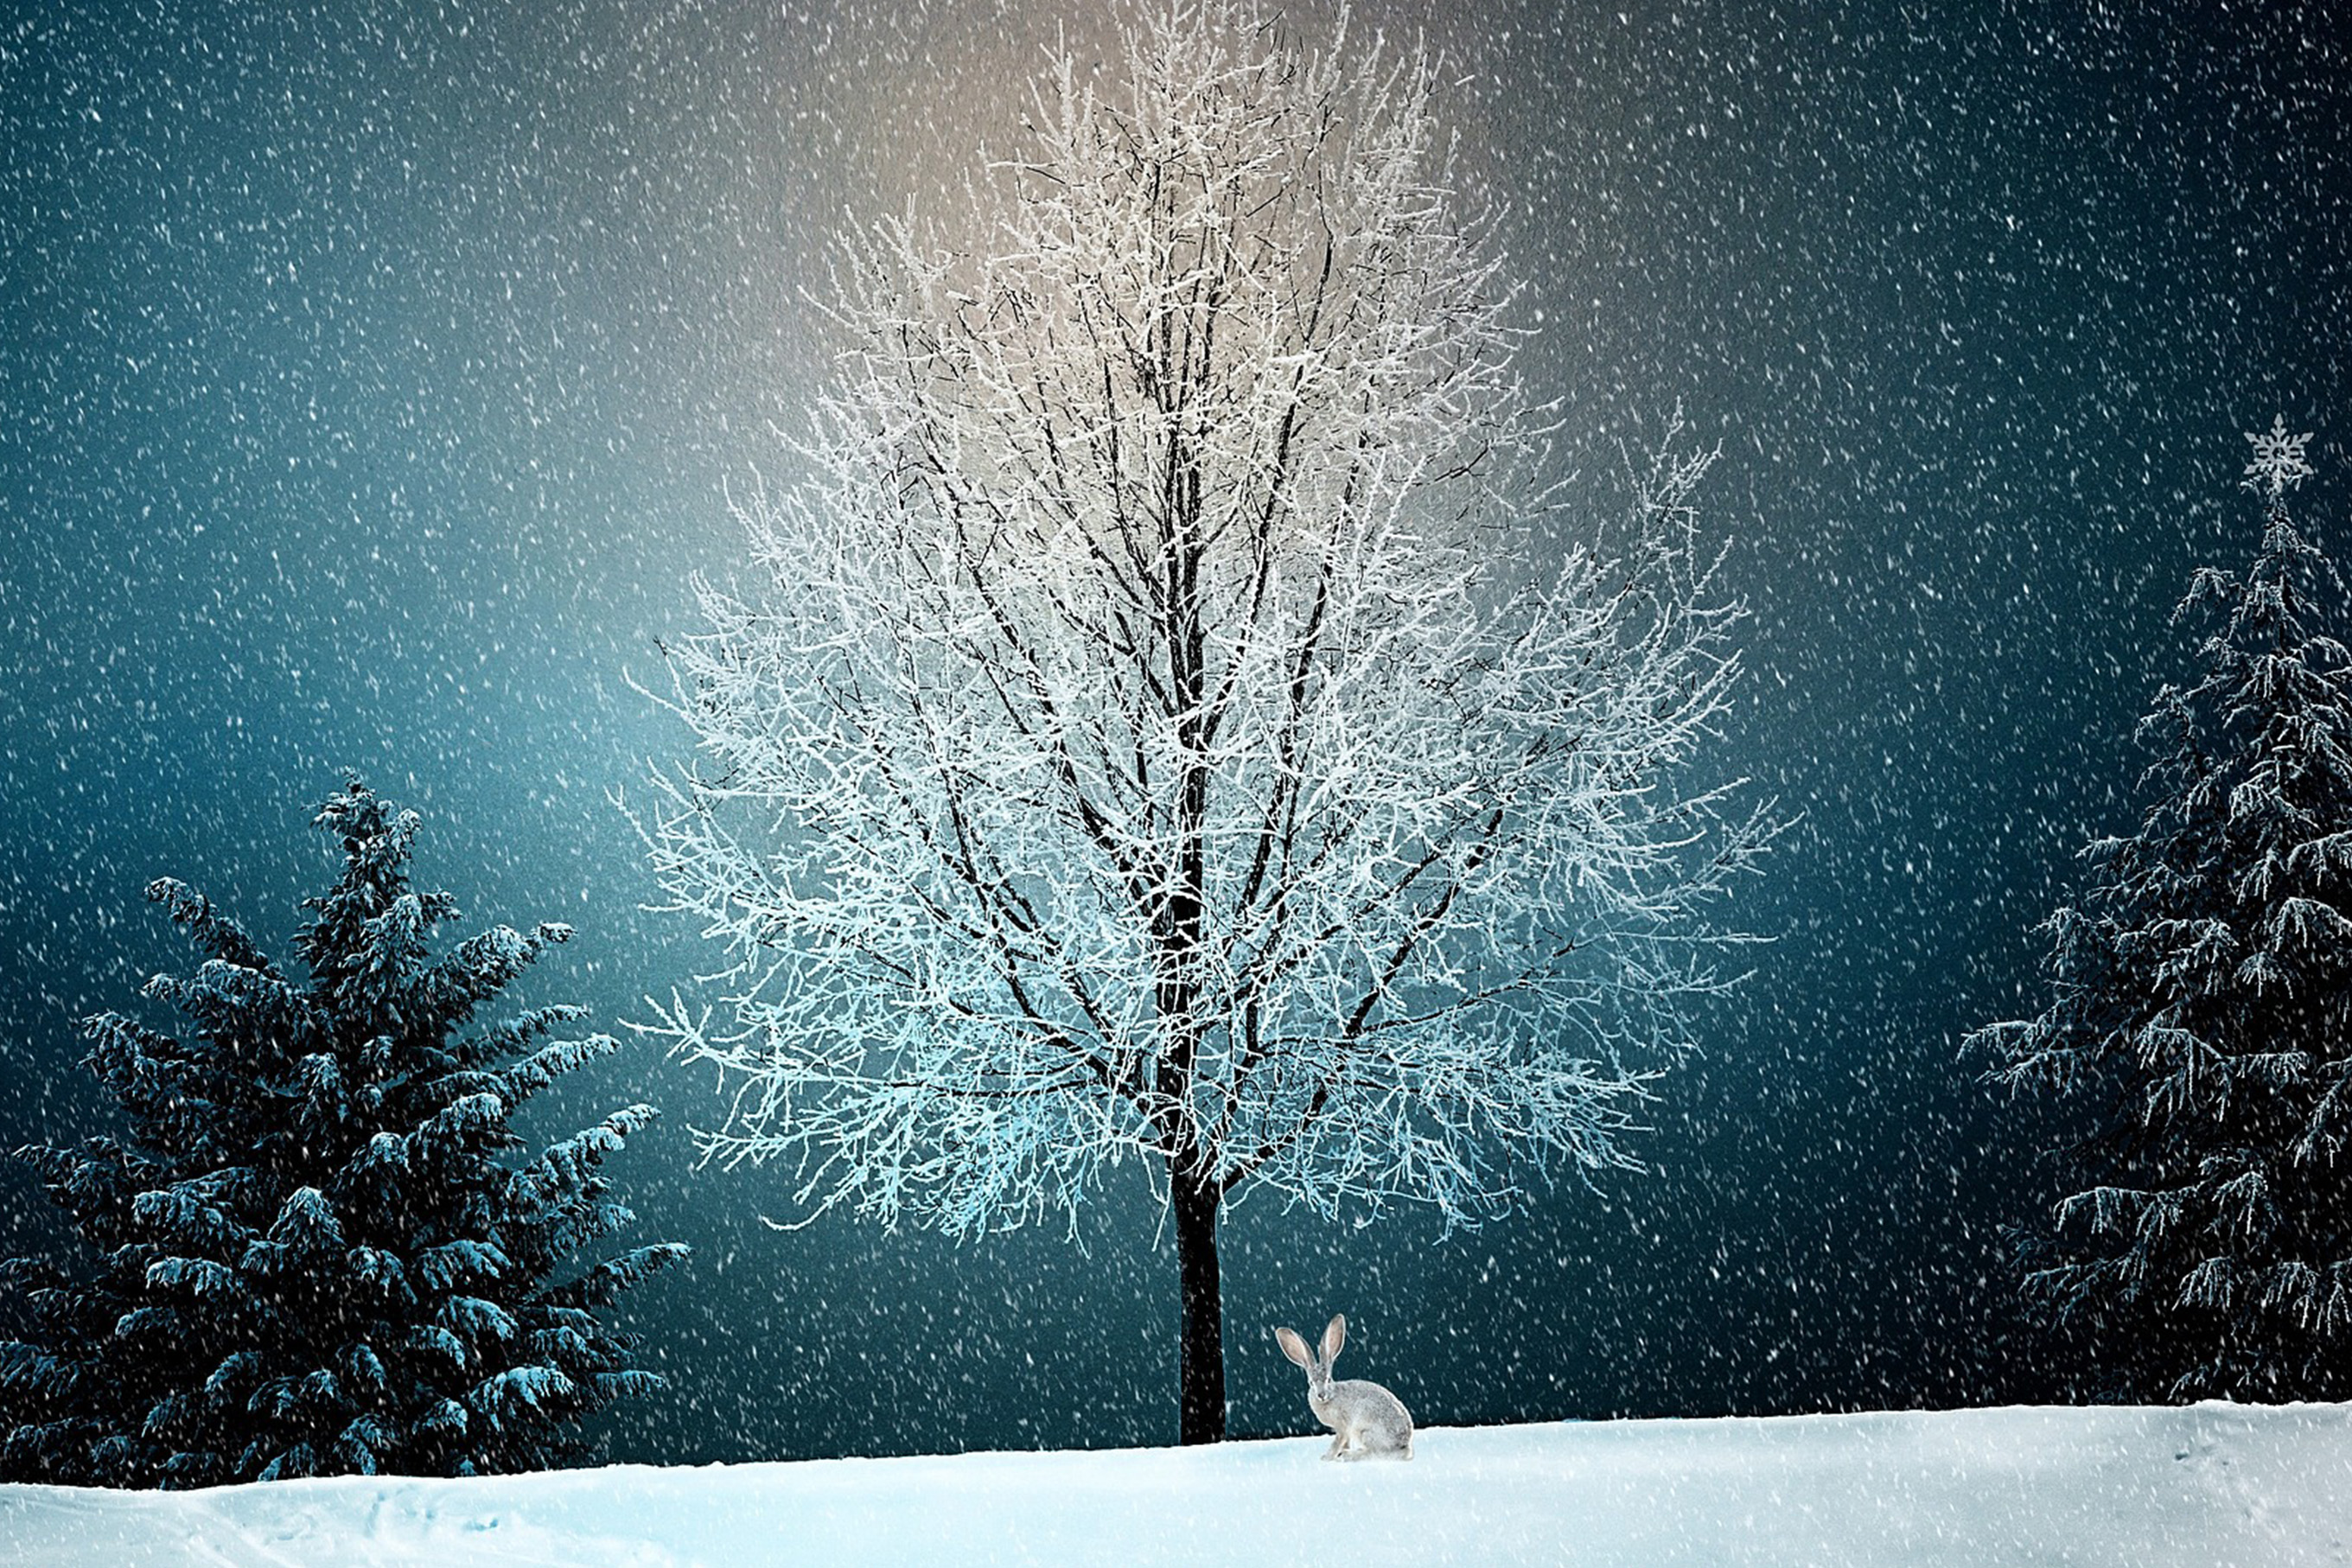 Hare på ett snölandskap. i bakgrunden ett träd med snö på grenarna. Illustration.